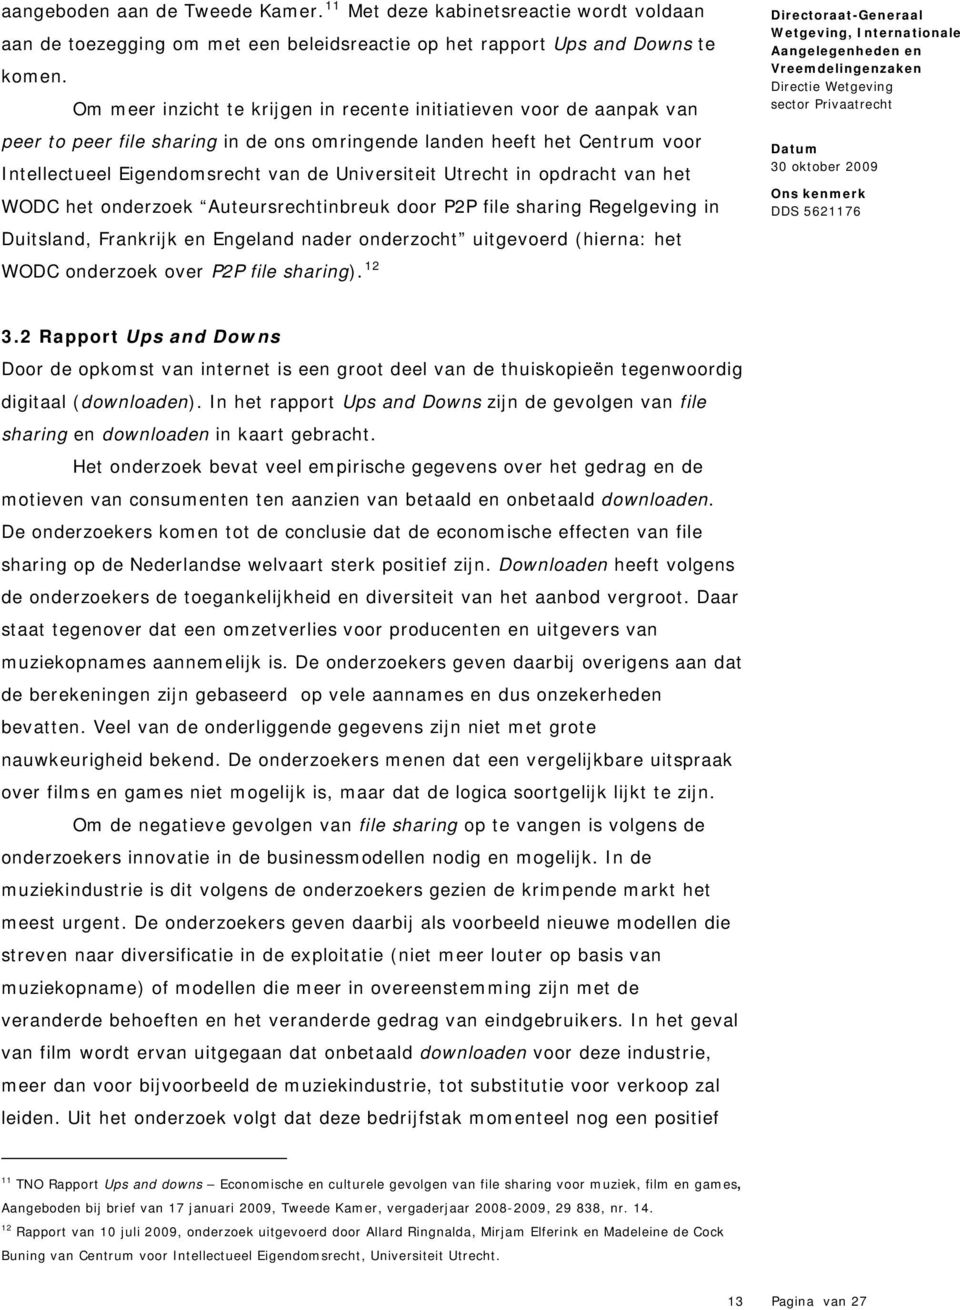 Utrecht in opdracht van het WODC het onderzoek Auteursrechtinbreuk door P2P file sharing Regelgeving in Duitsland, Frankrijk en Engeland nader onderzocht uitgevoerd (hierna: het WODC onderzoek over